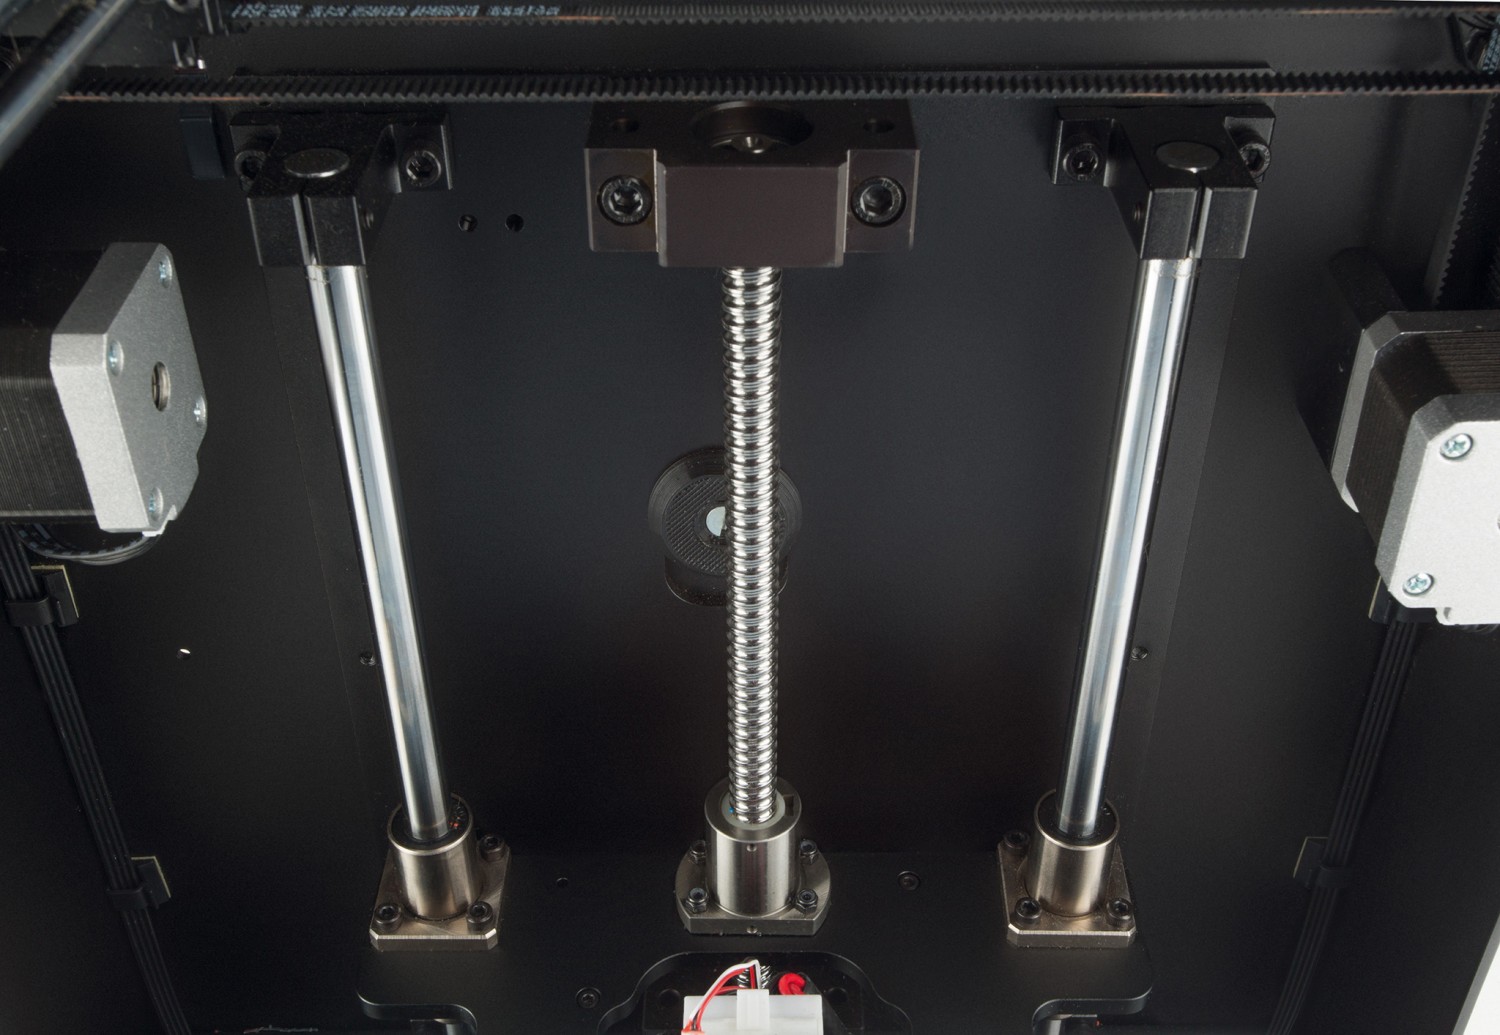 Stationäre Maschinen Zortax M200 3D Printer im Test, Bild 4